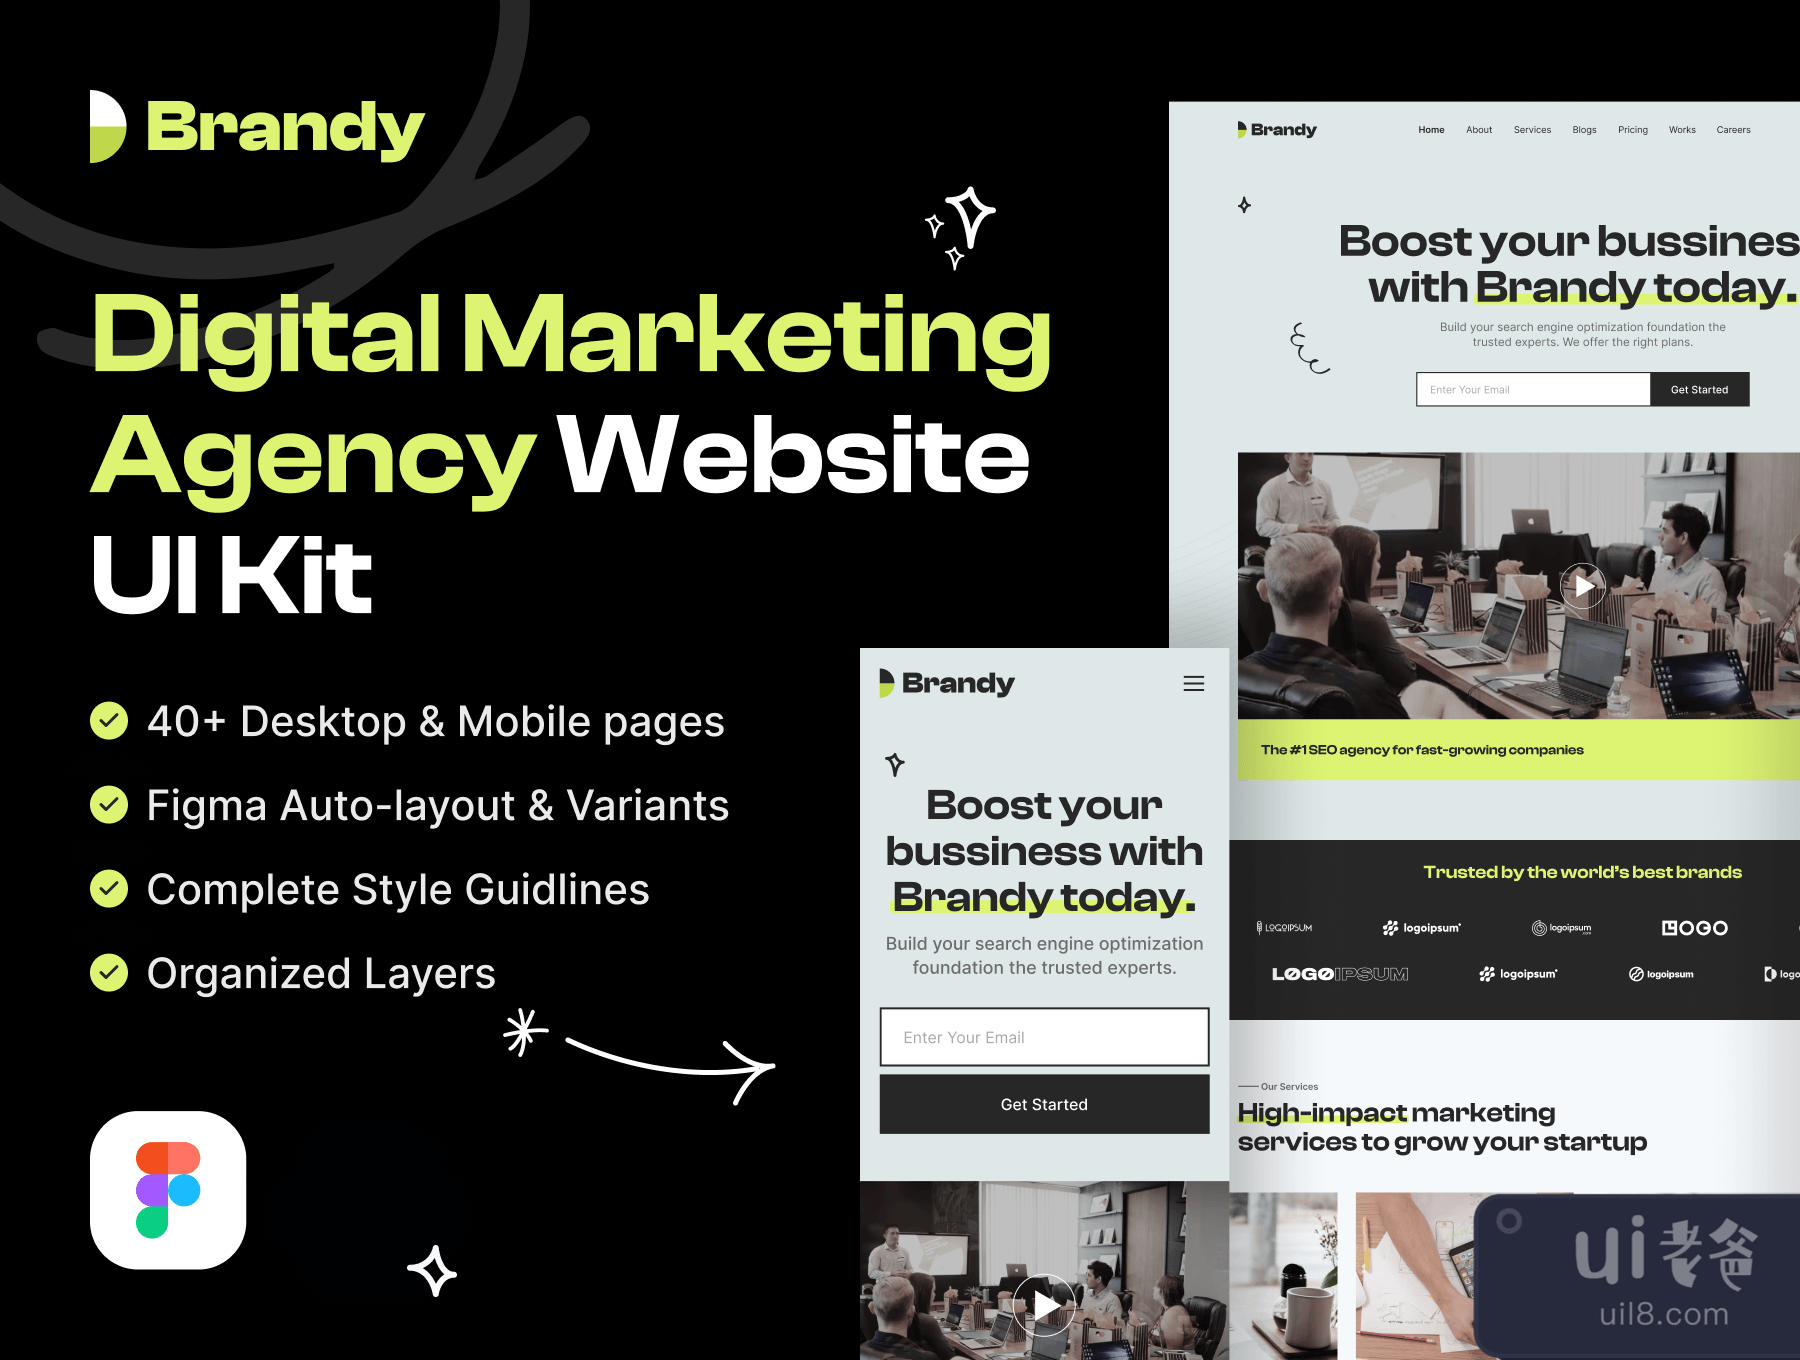 白兰地 - 数字营销机构网站UI包(Brandy - Digital Marketing Agency Website UI Kit)插图3